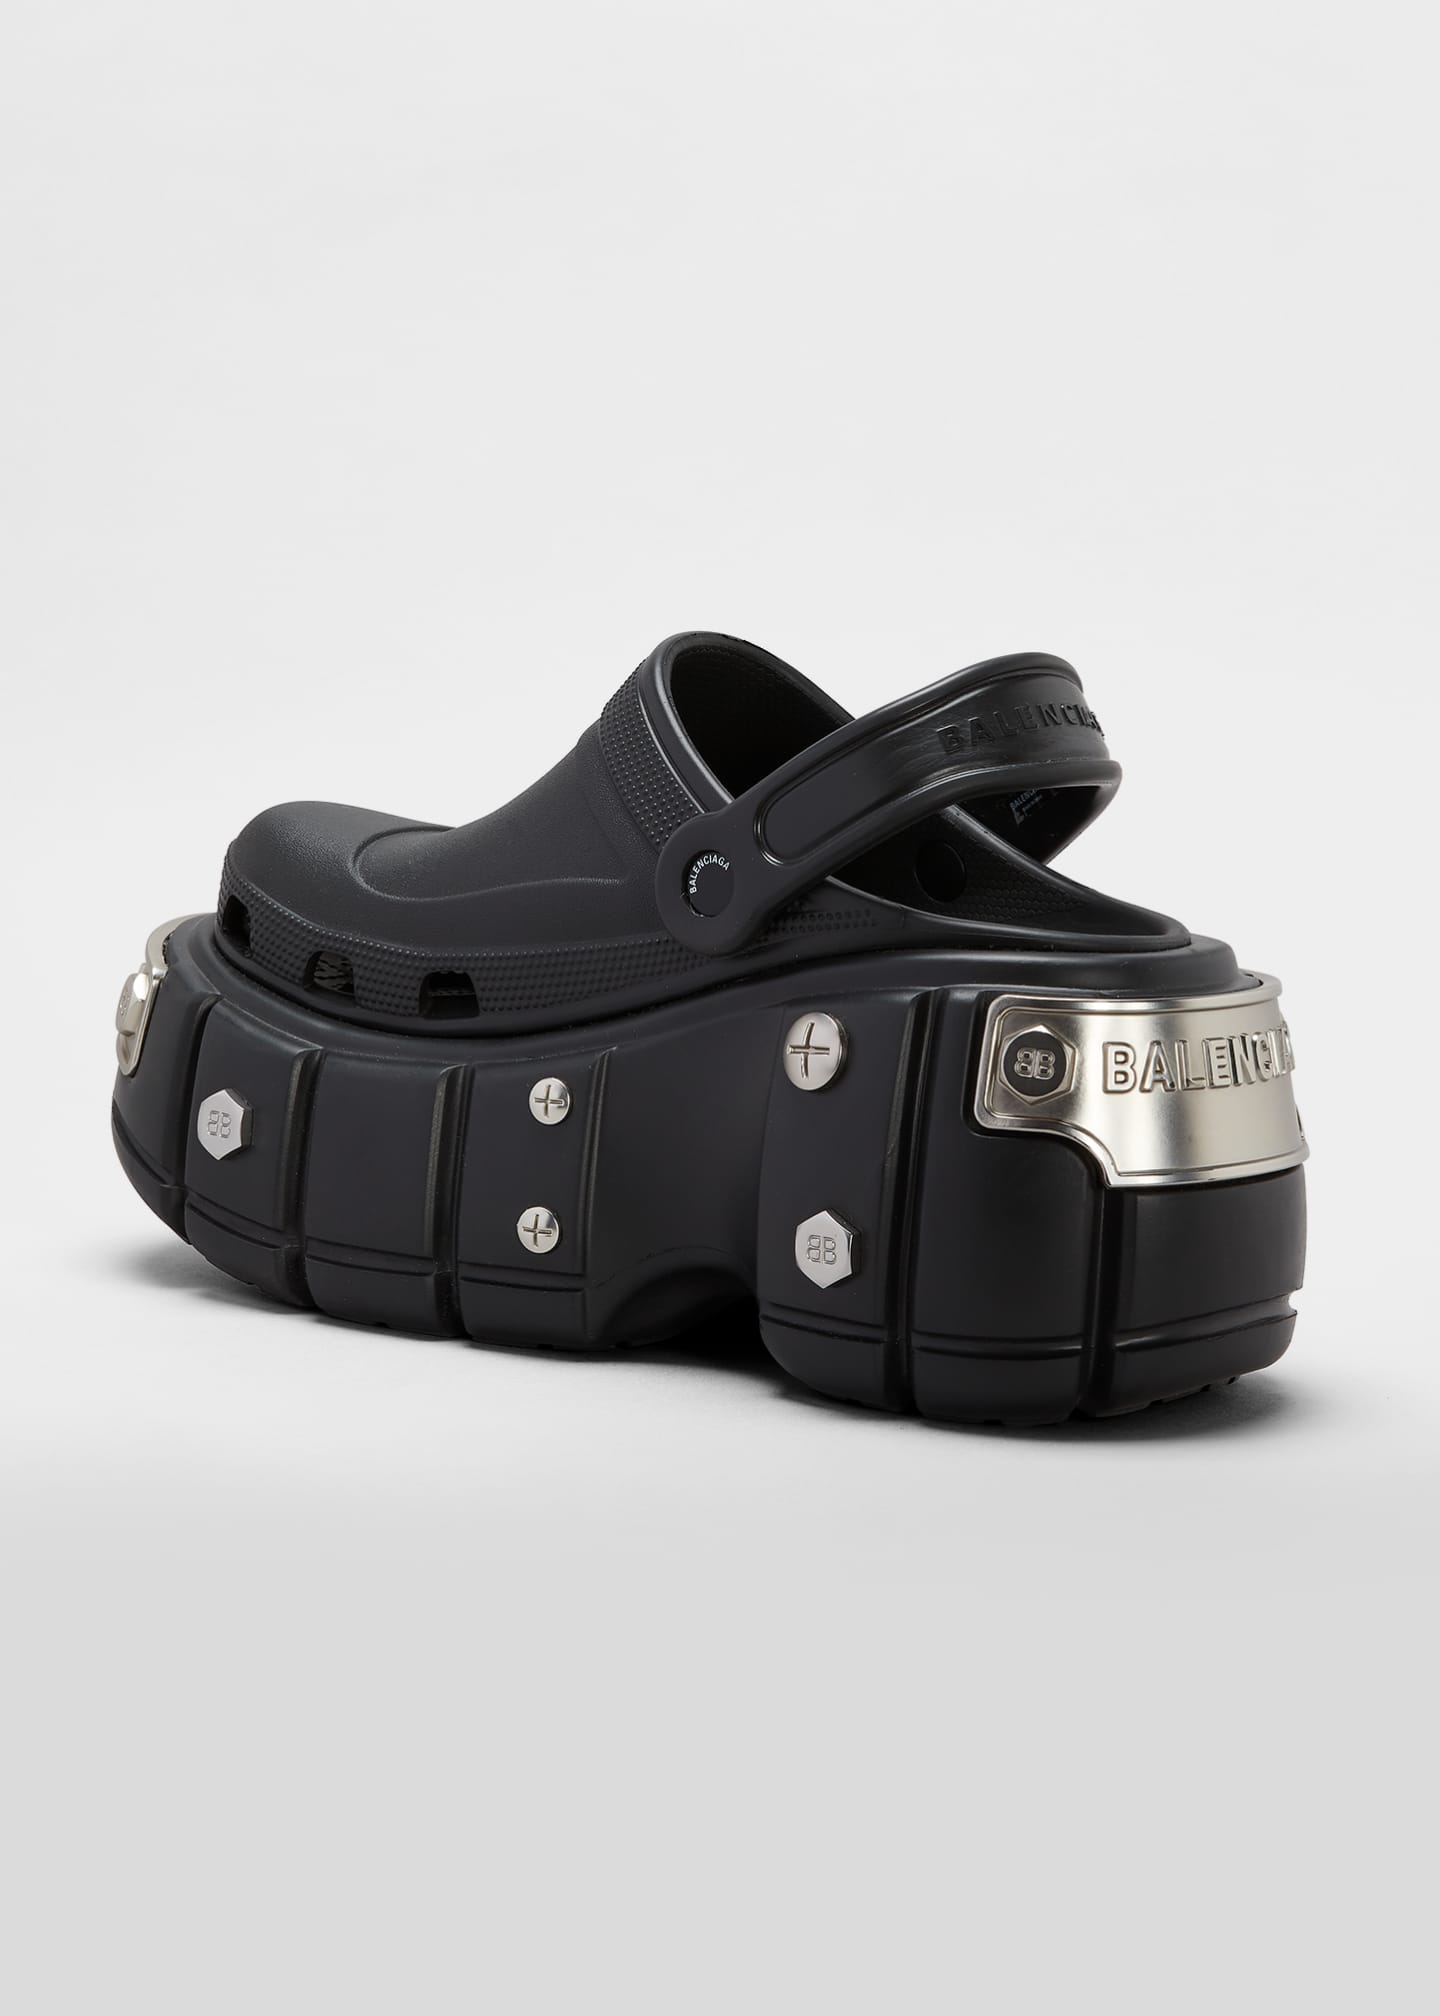 BALENCIAGA HARDCROCS™ ミュール ハードクロックス 39 黒 - 靴